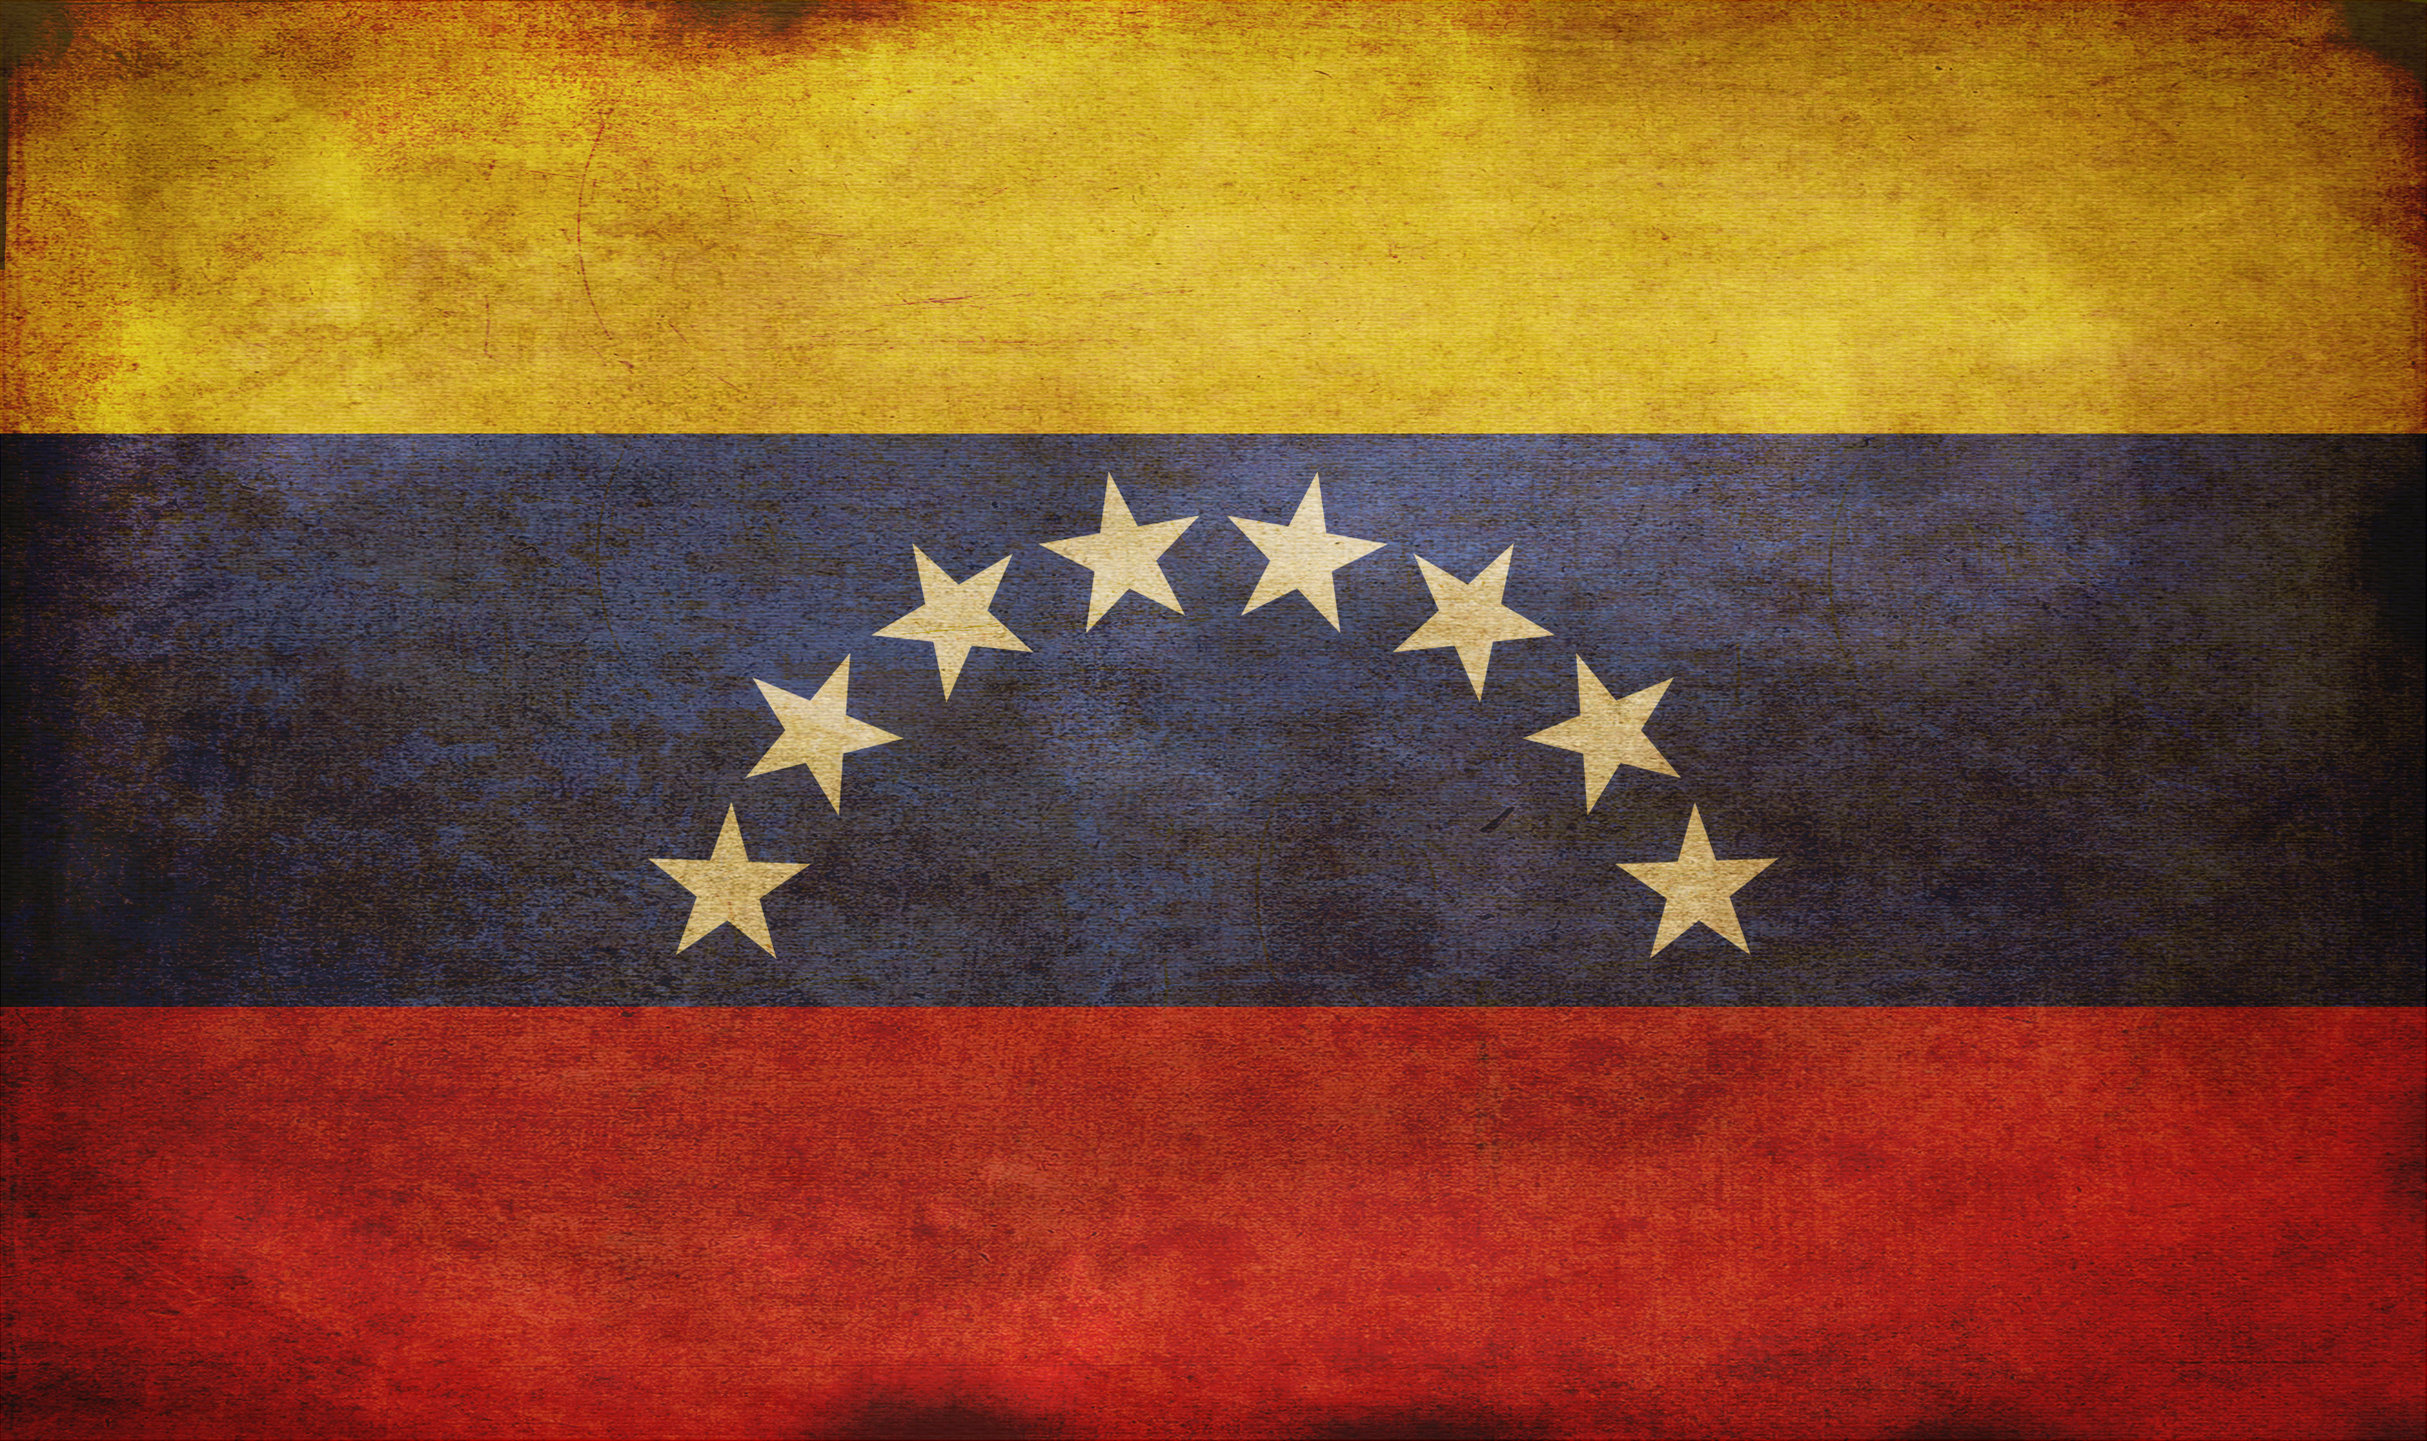 Venezuela - Grunge by tonemapped on DeviantArt